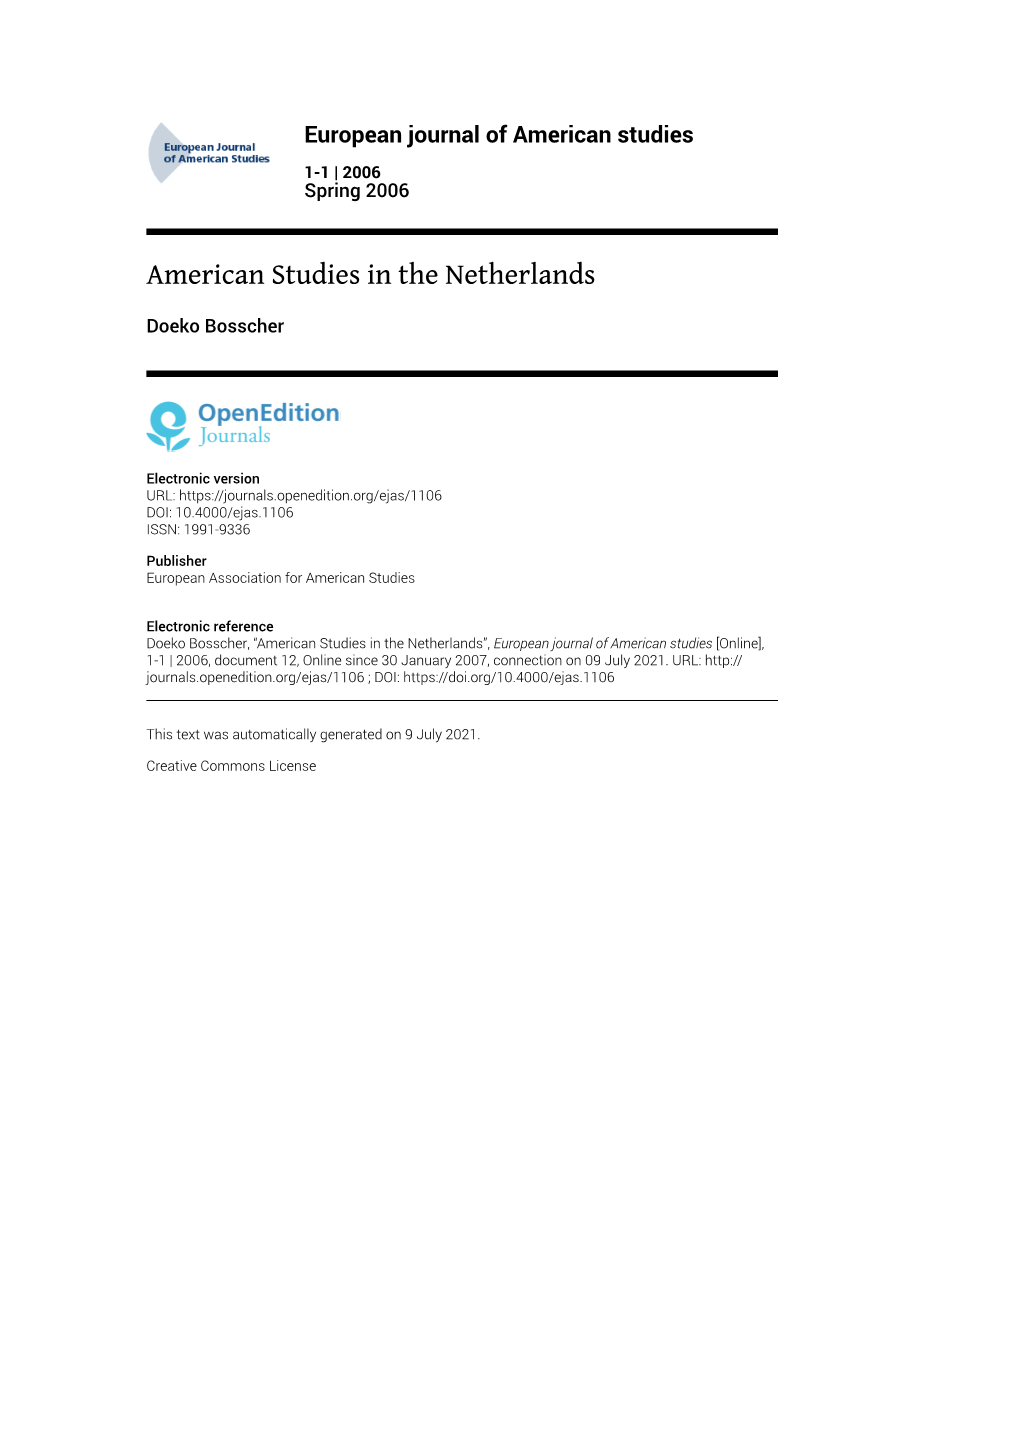 European Journal of American Studies, 1-1 | 2006 American Studies in the Netherlands 2